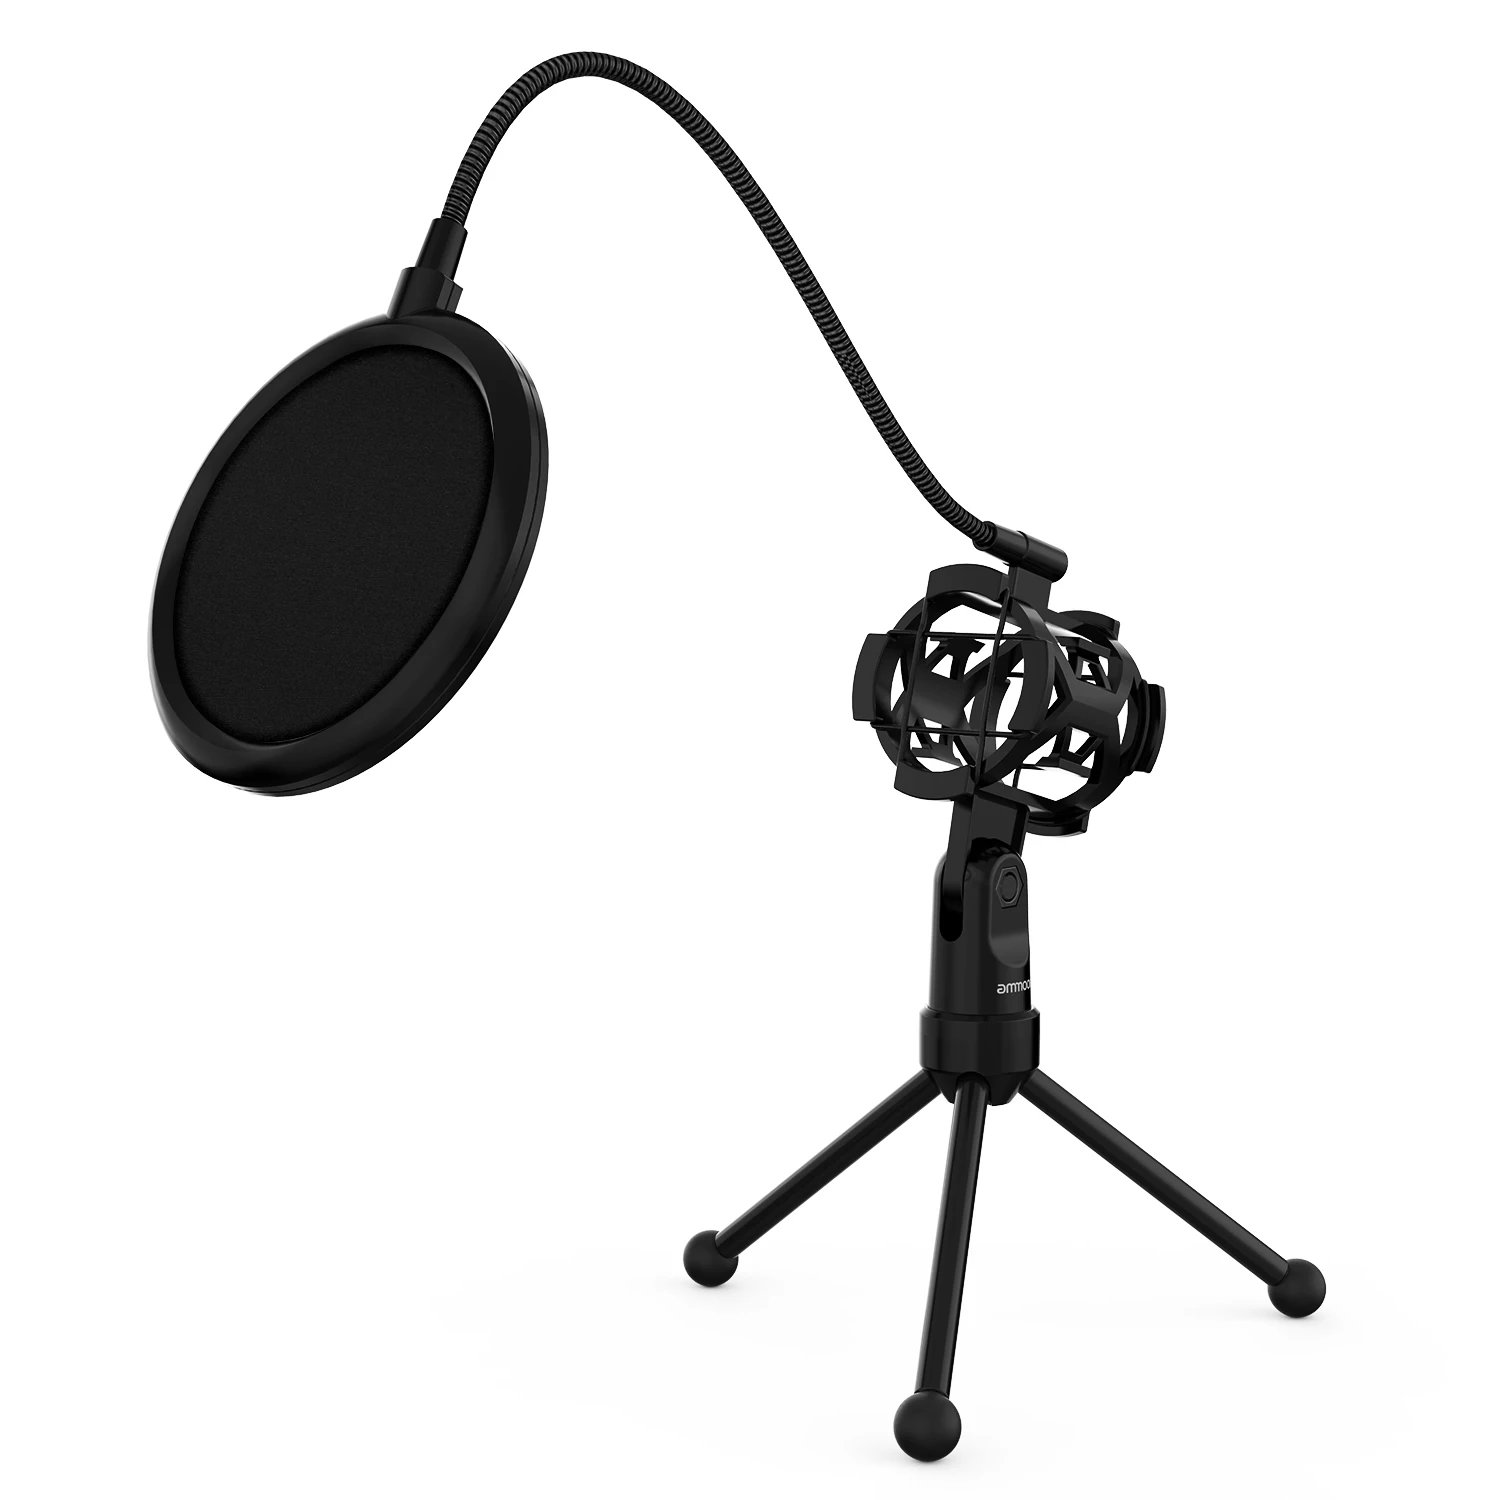 Ammoon мини настольный микрофон Стенд с подвесом штатив держатель микрофона Поп фильтр для студии запись вещания пение